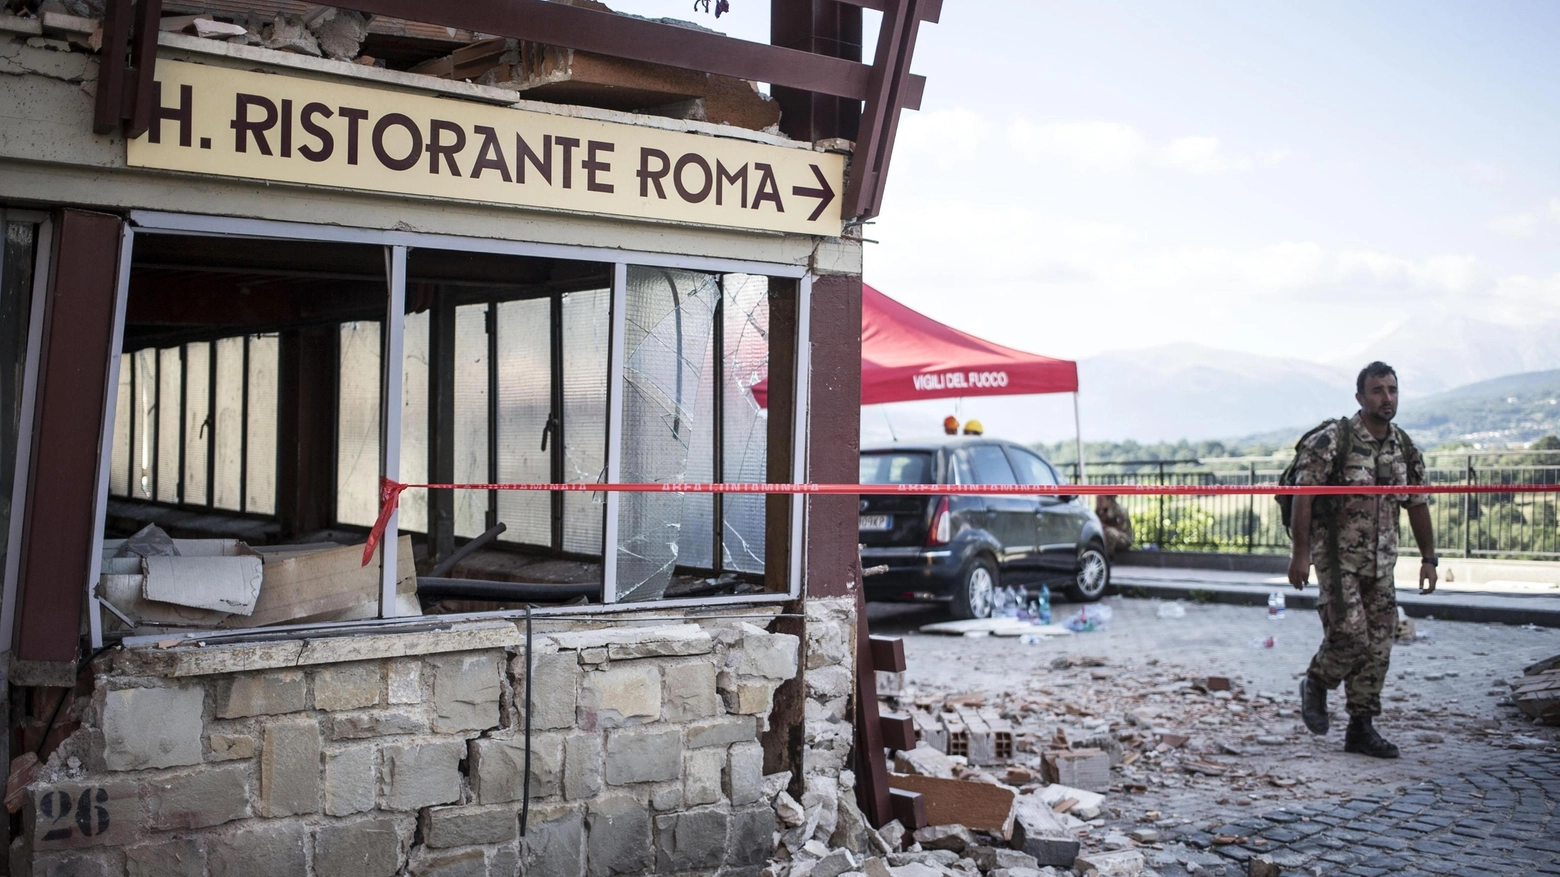 La facciata dell'hotel Roma ad Amatrice distrutta dal terremoto del 24 agosto 2016